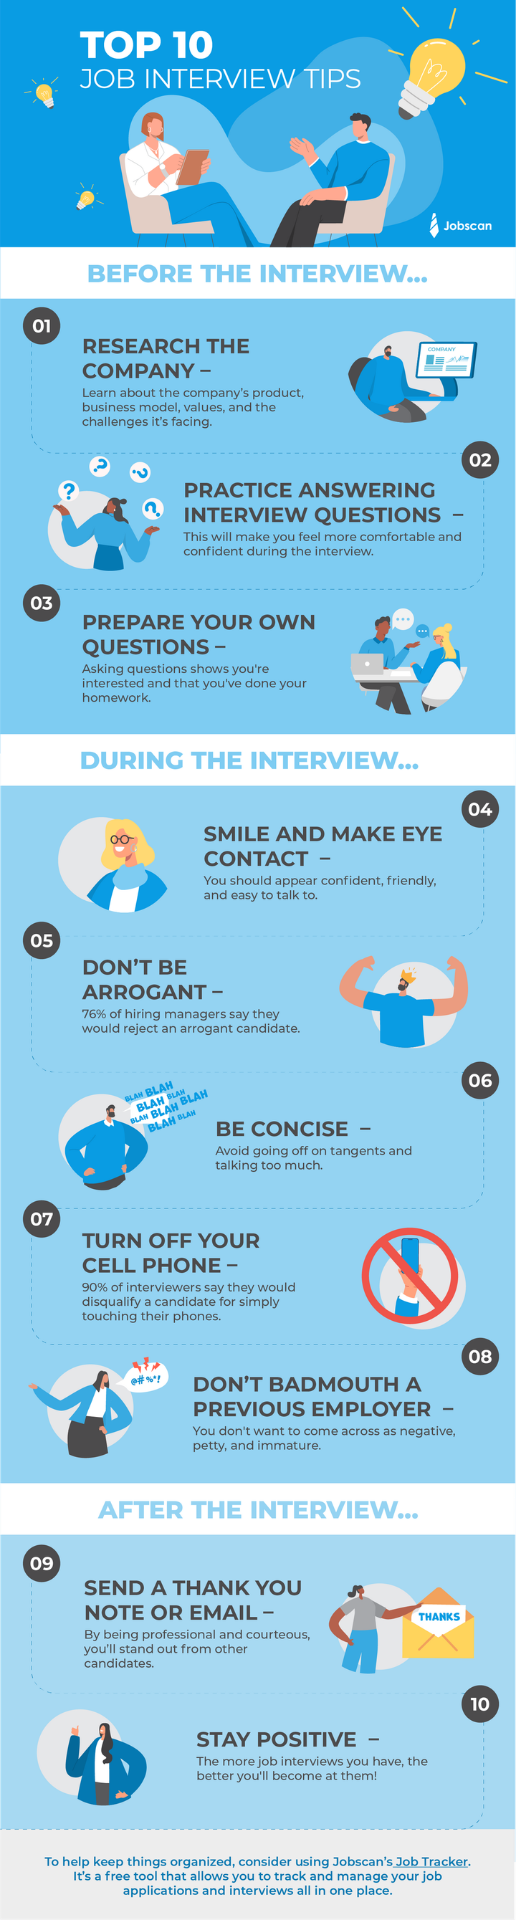 Top 10 Job Interview Tips